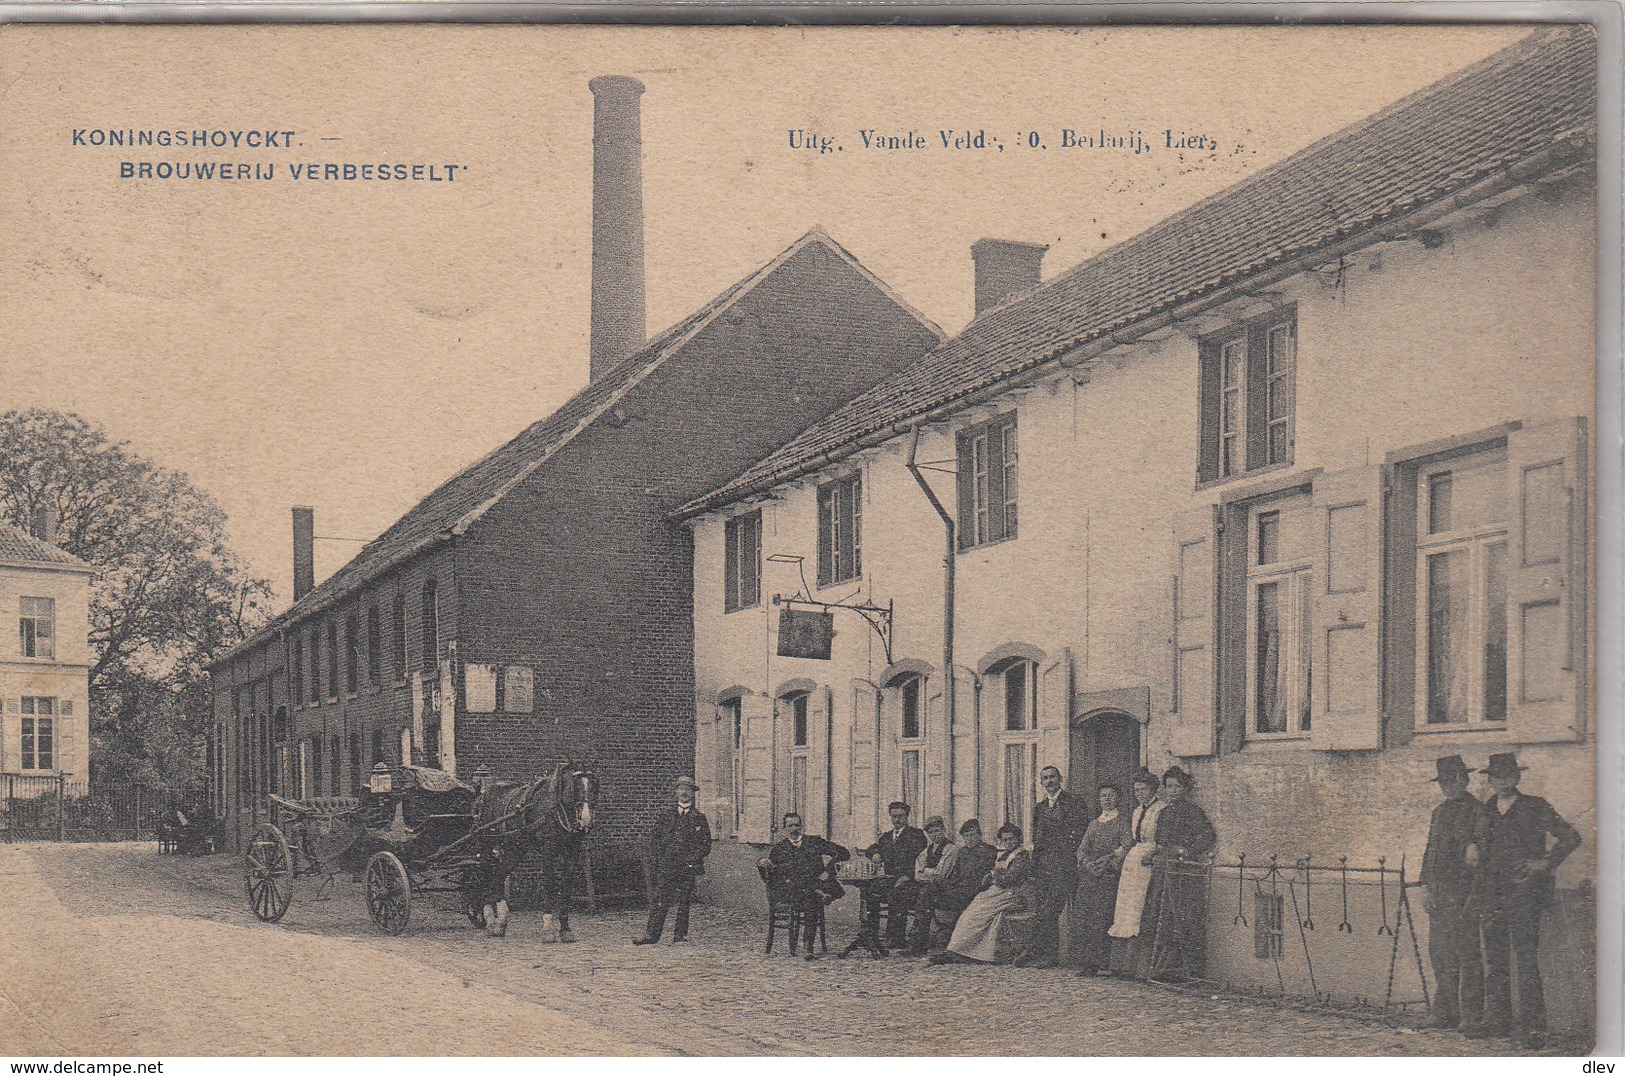 Koningshoyckt - Brouwerij Verbesselt - 1909 - Zeer Geanimeerd - Uitg. Vande Velde, Lier - Lier